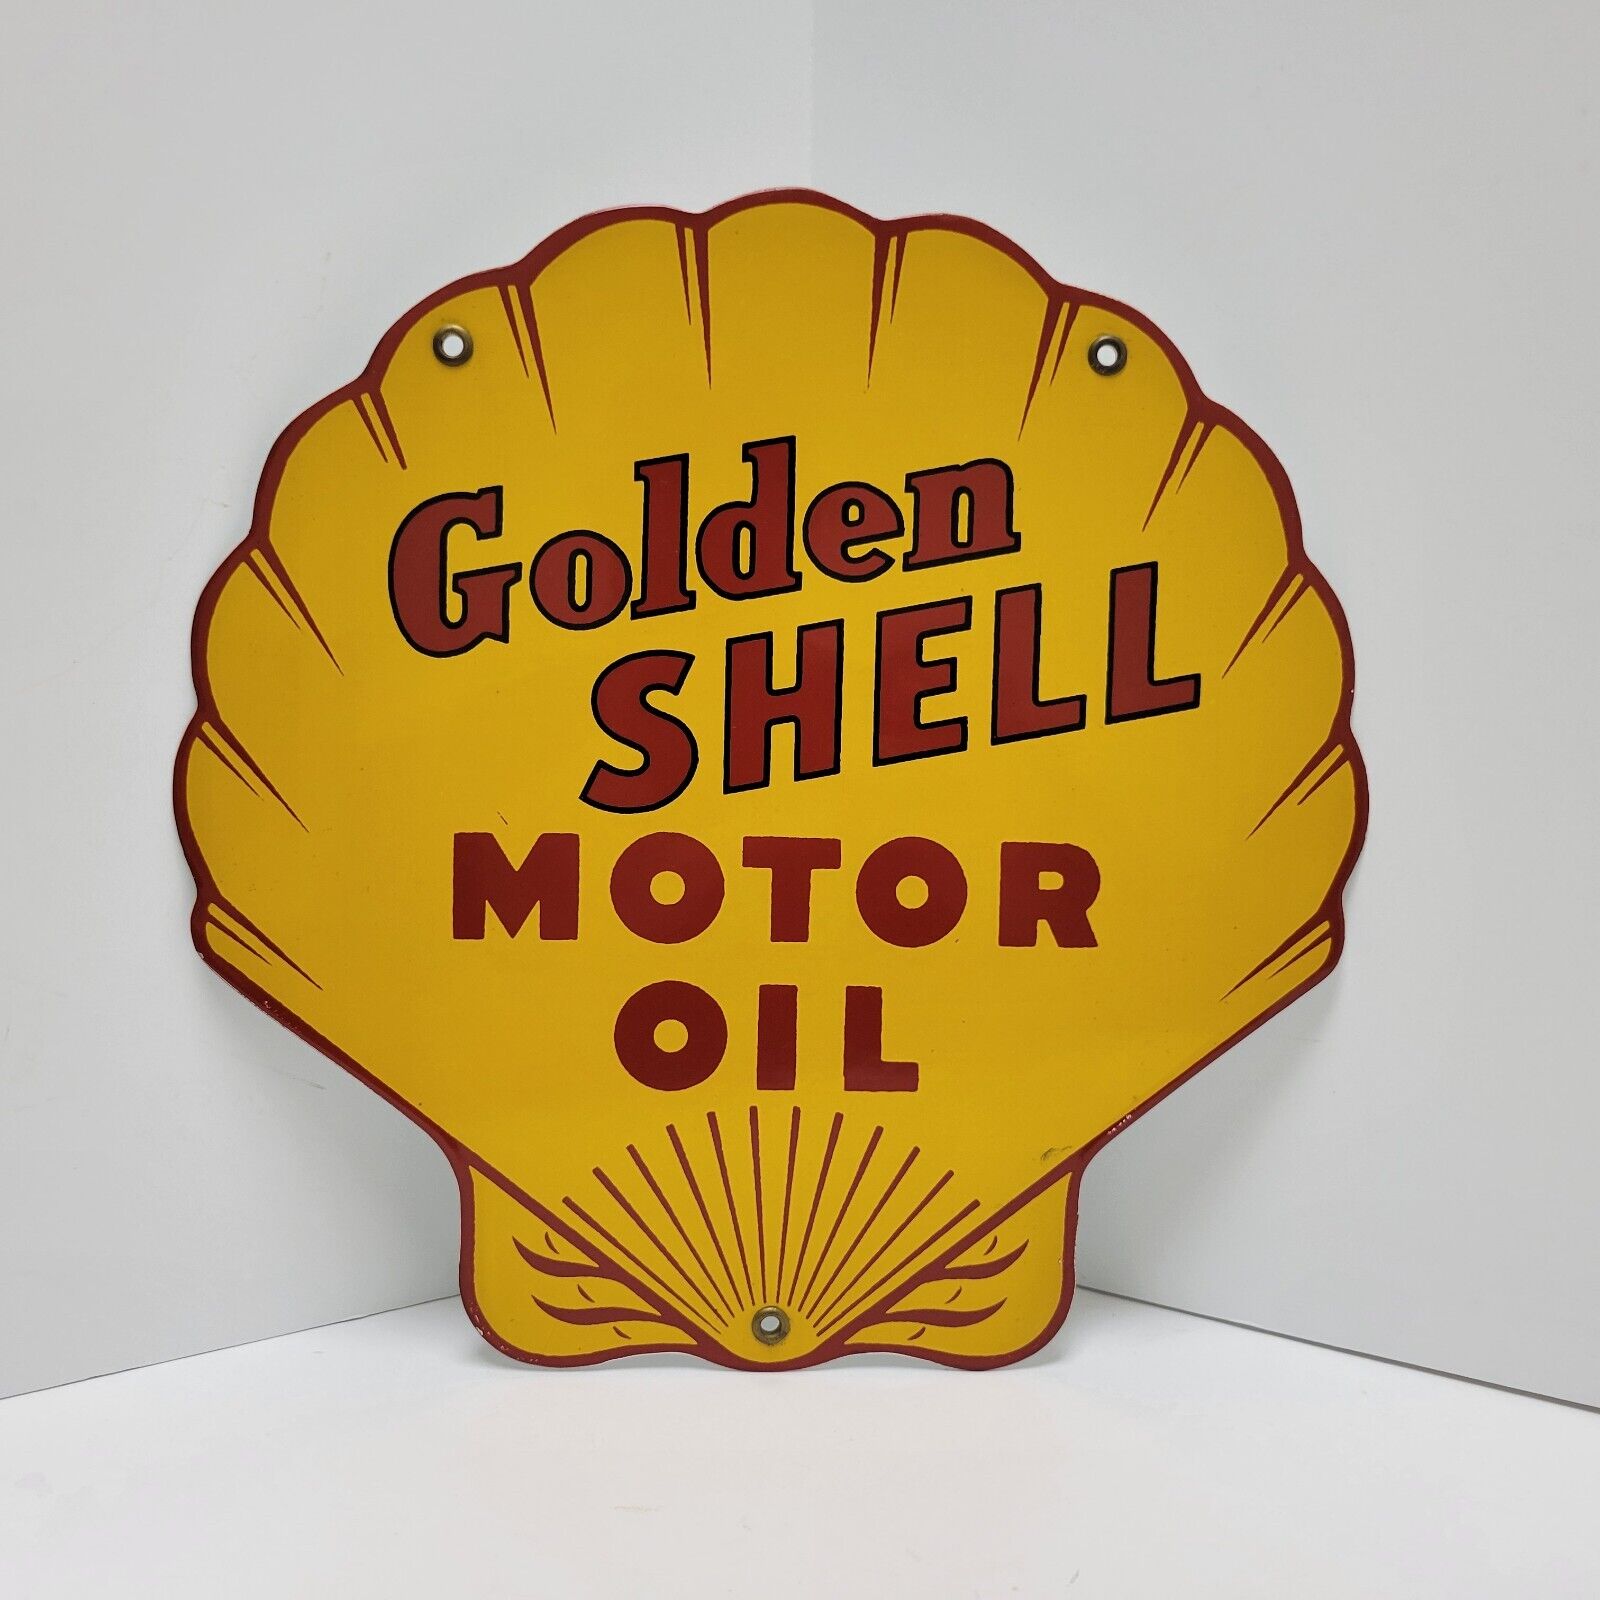 Golden Shell Motor Oil Clam Gas Station Porcelain Pump Plate Dealer Sign Garage